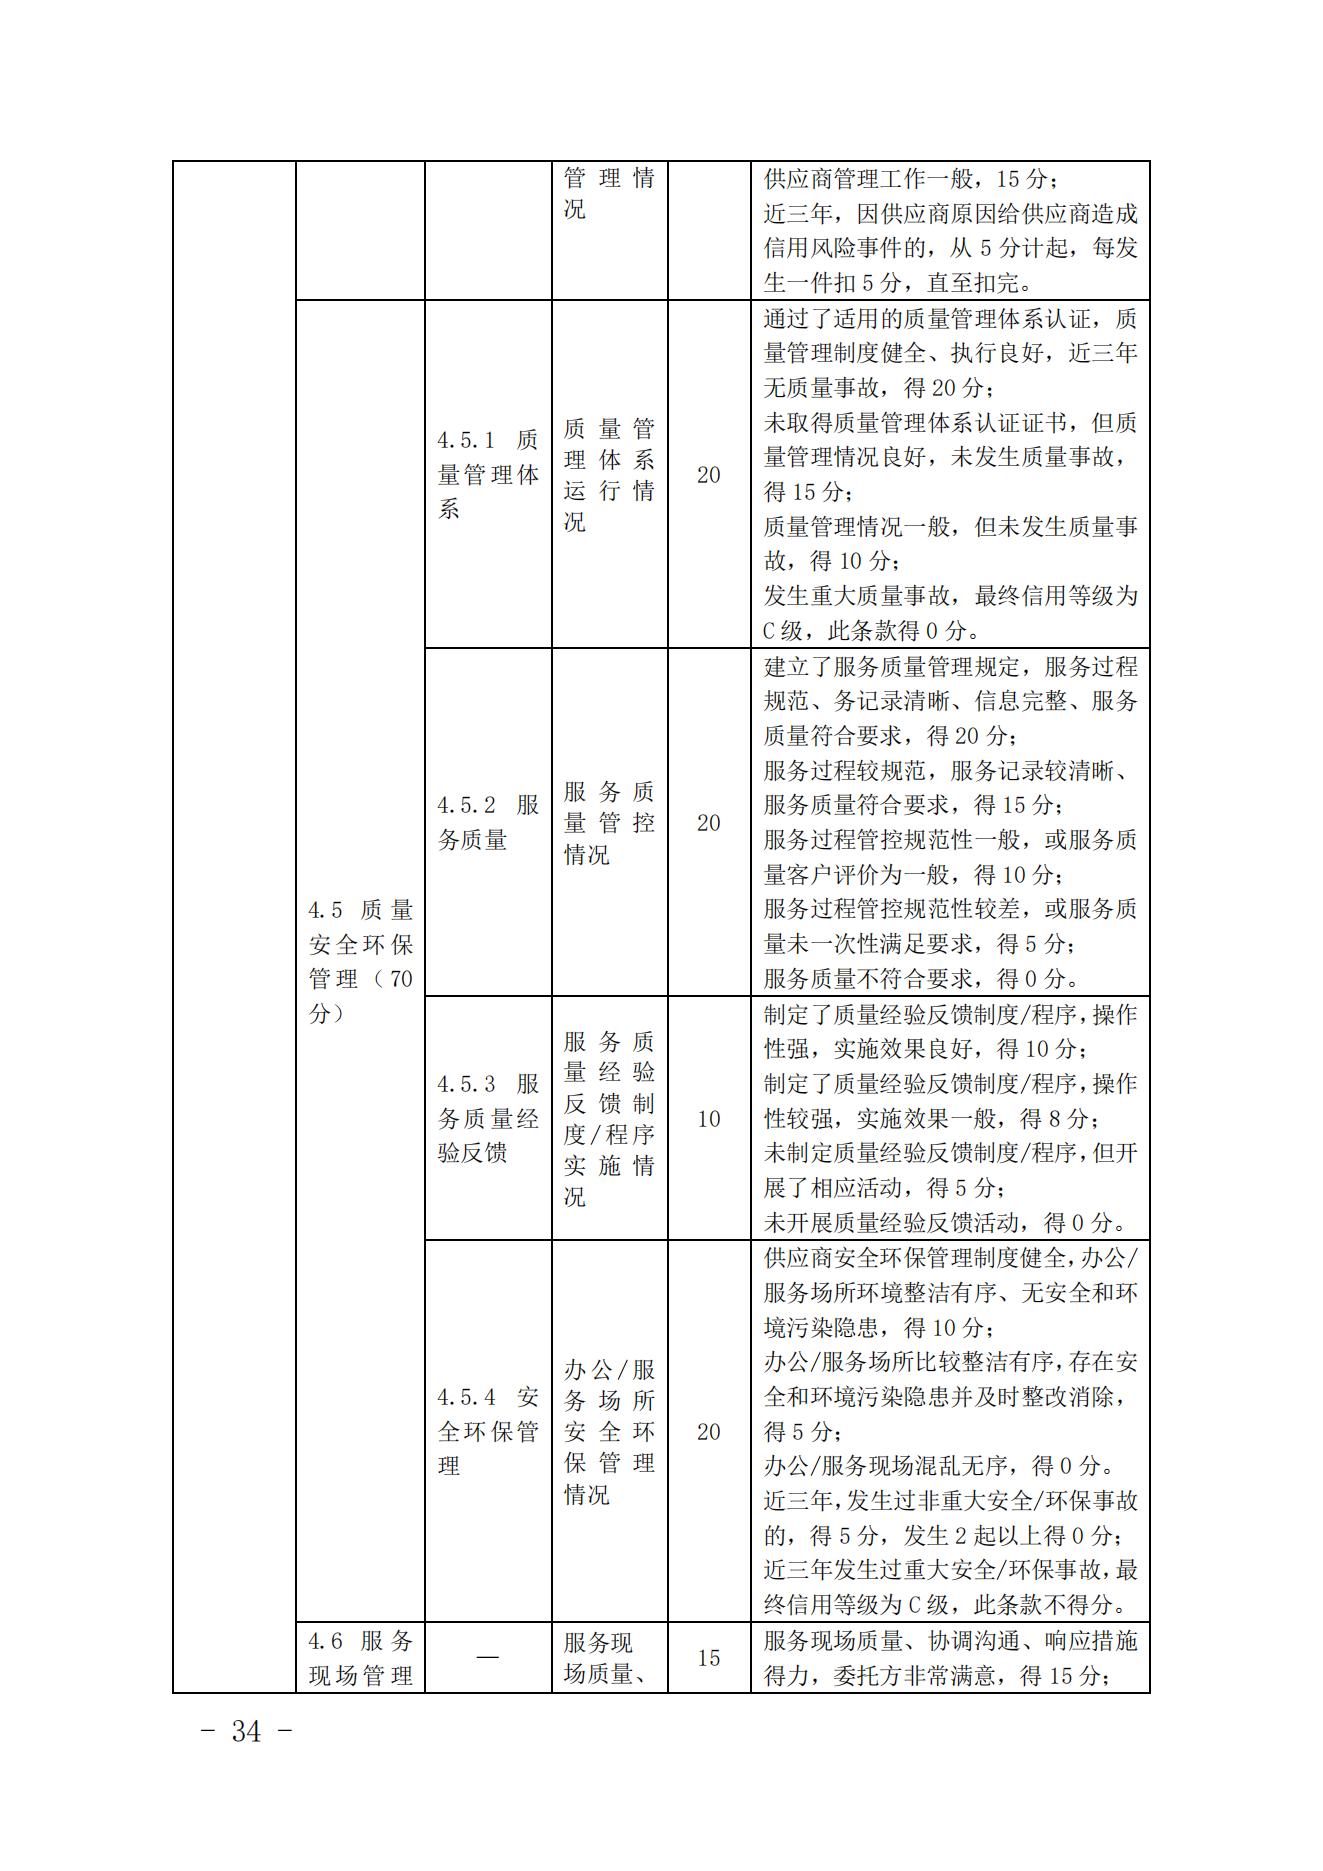 关于印发《中国核能行业协会核能行业供应商信用评价管理办法》《中国核能行业协会核能行业供应商信用评价规范》的通知_33.jpg